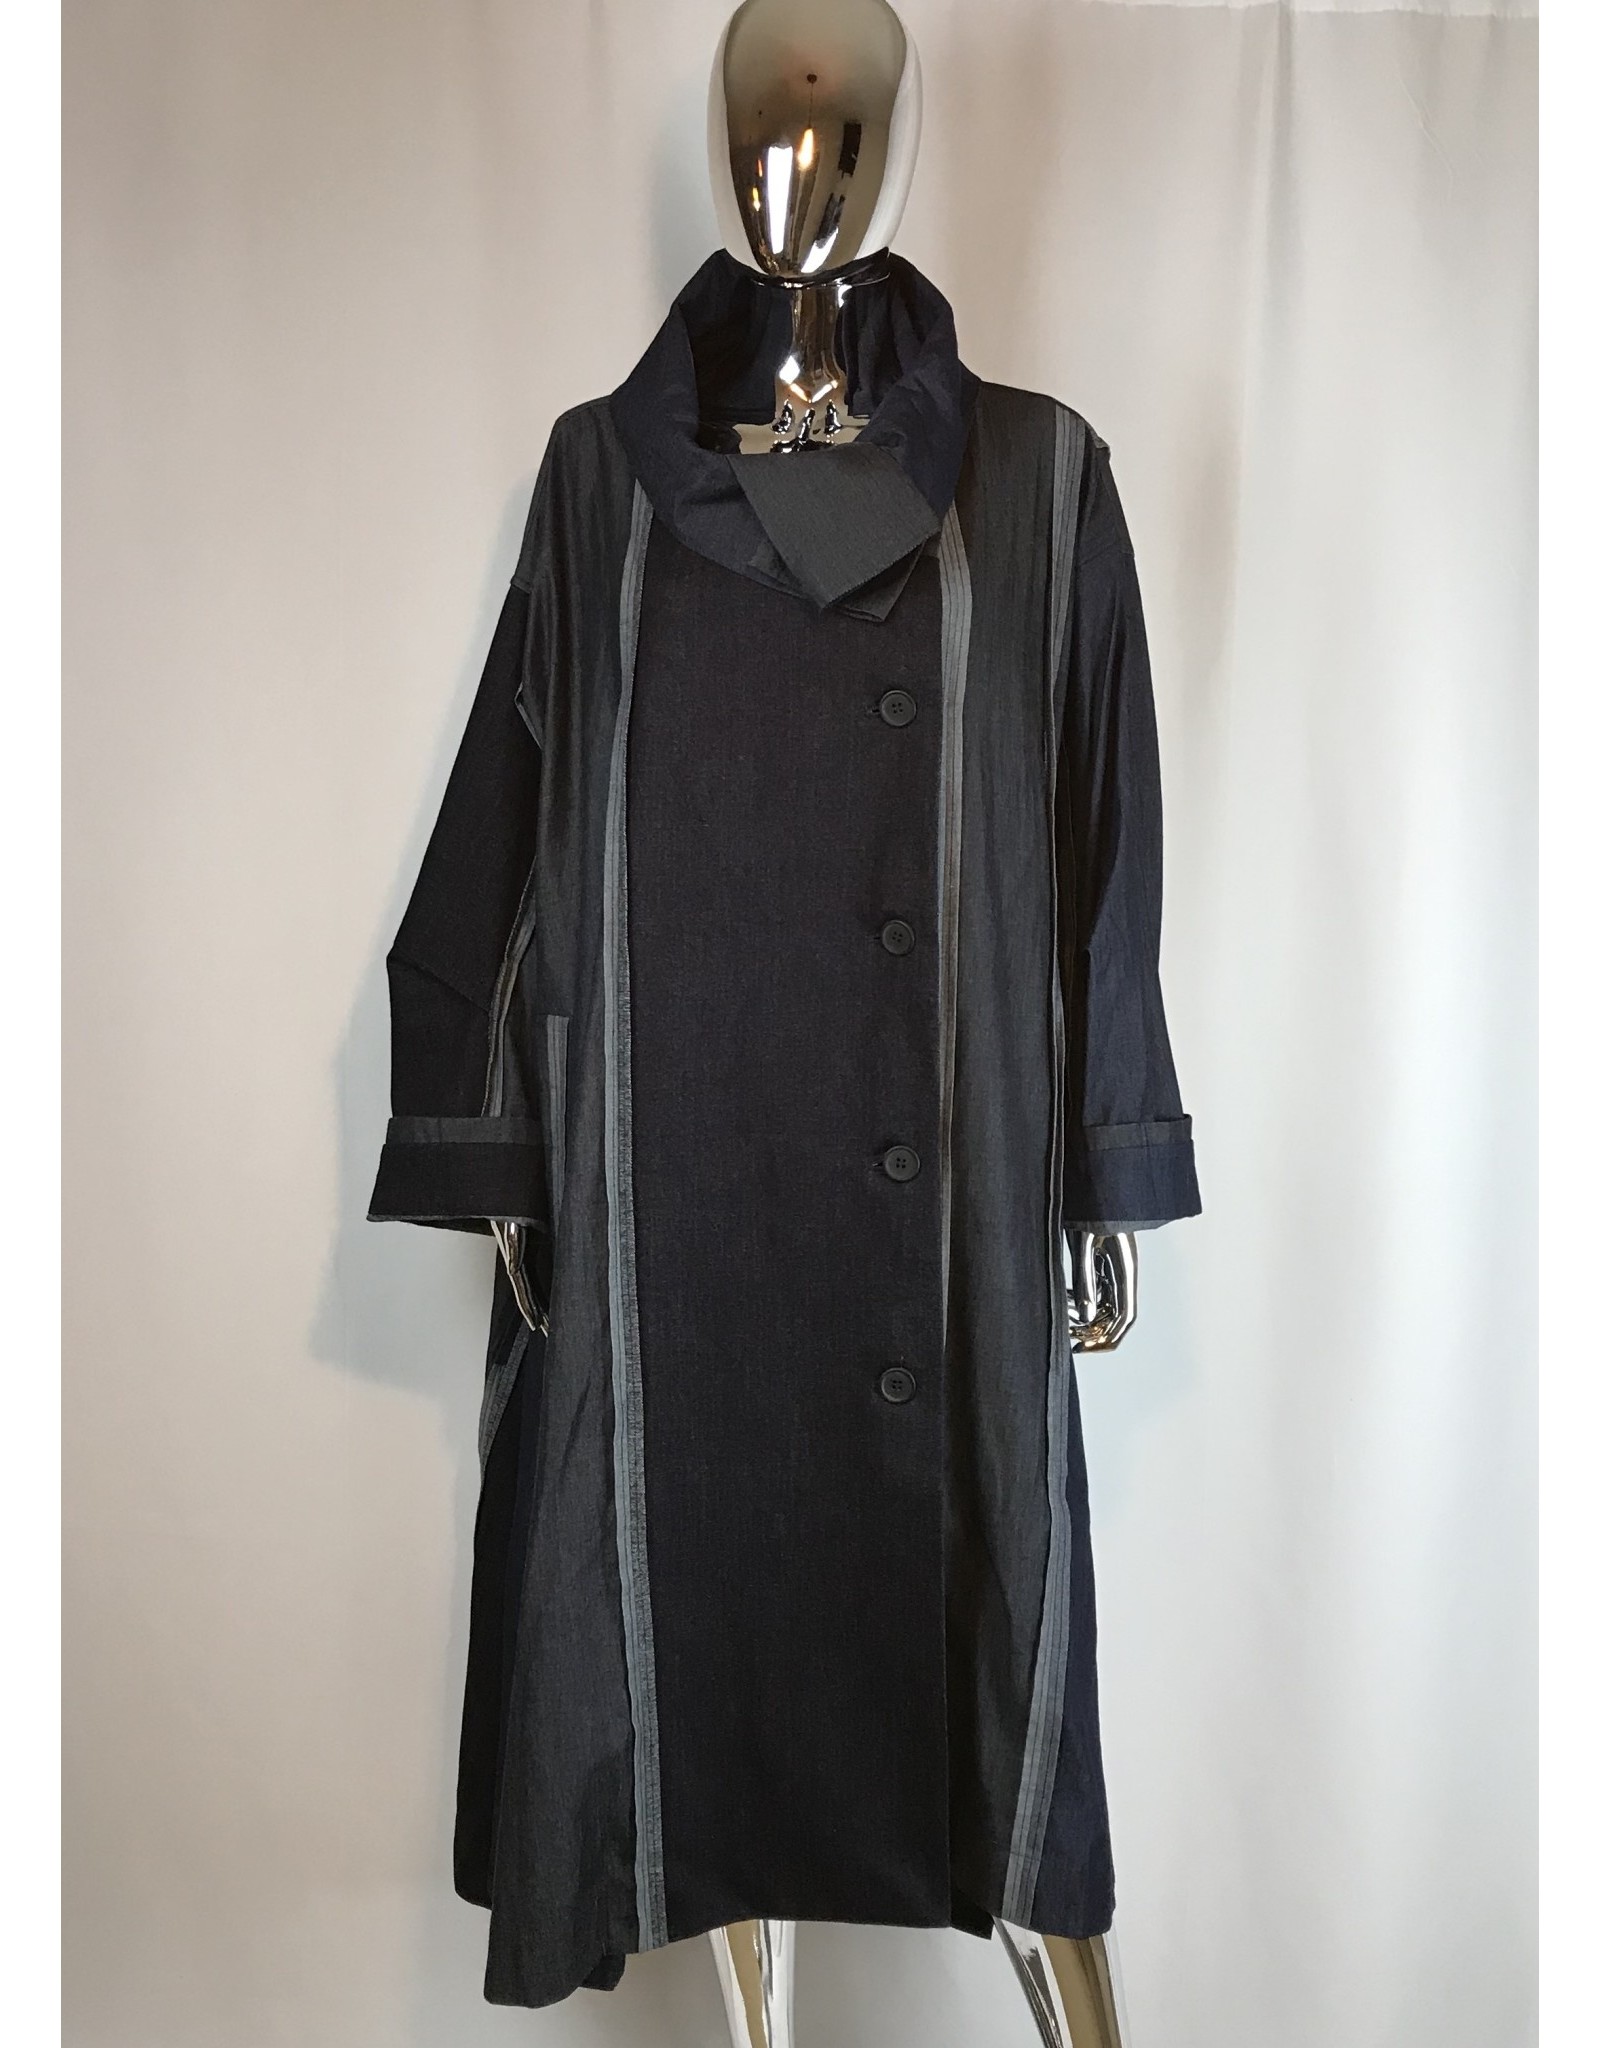 MOYURU MOYURU Coat, Size M